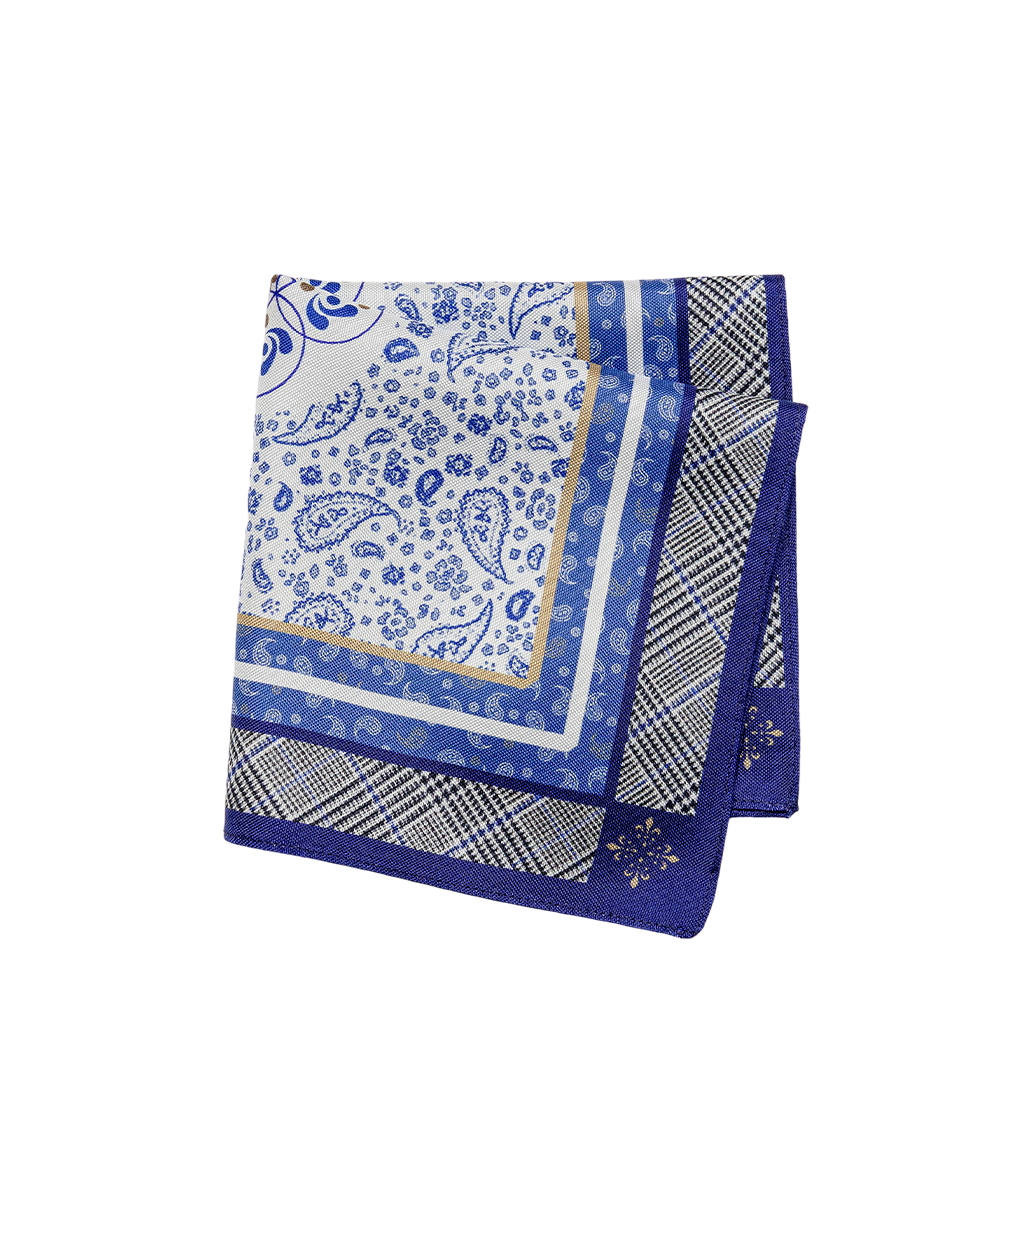 Fehér-kék paisley mintás selyem díszzsebkendő